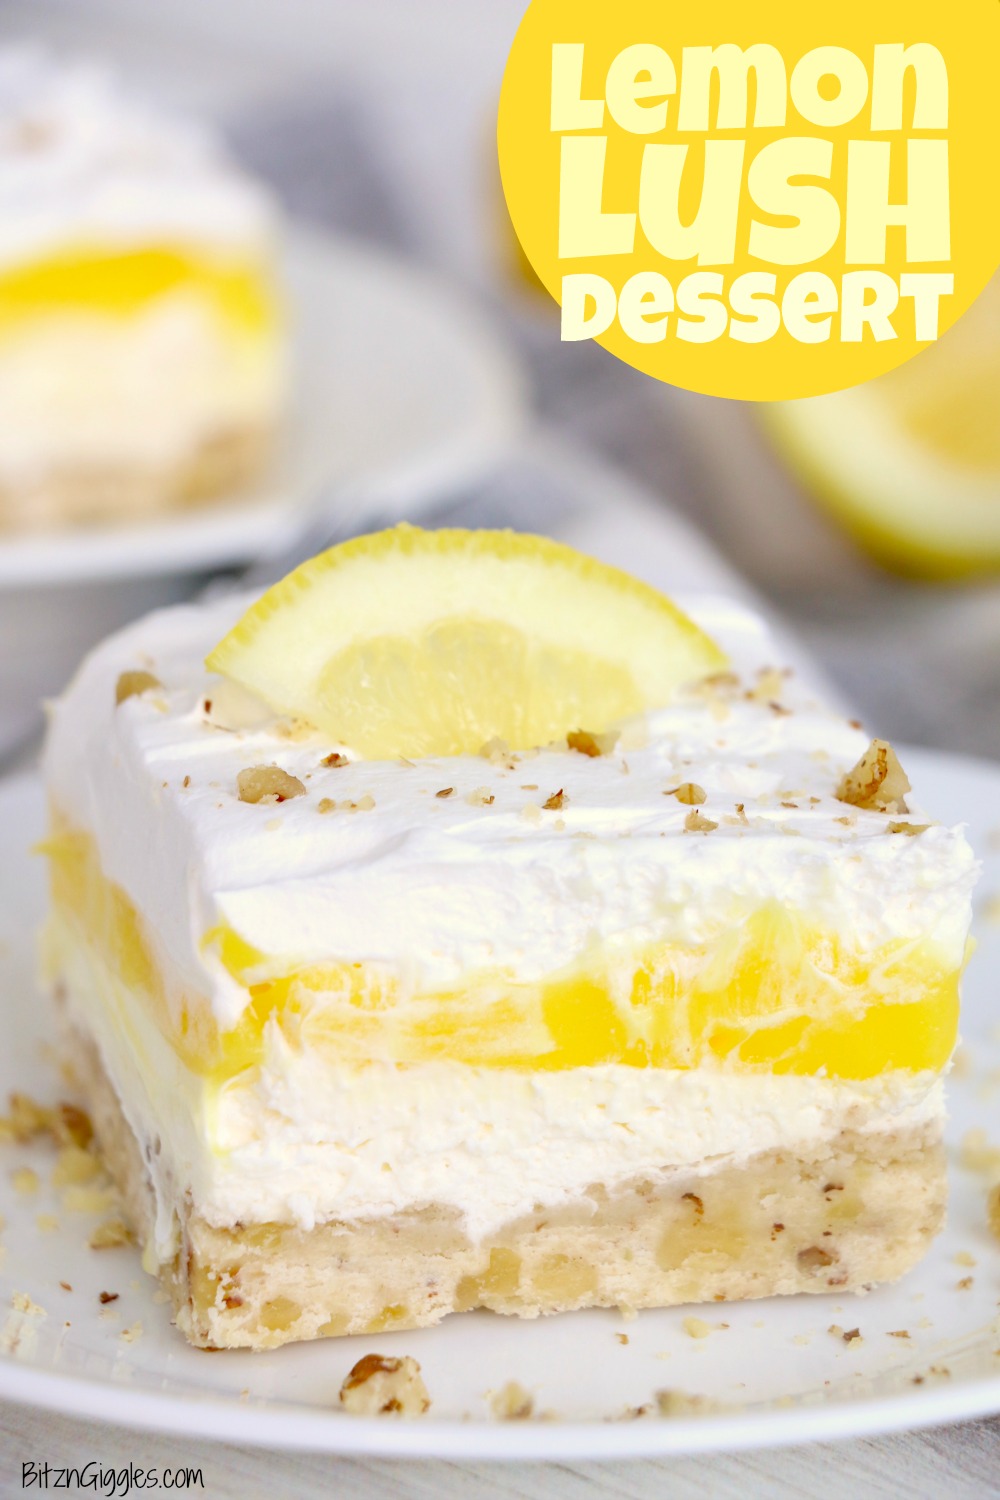 Lemon Lush Dessert Bitz Giggles